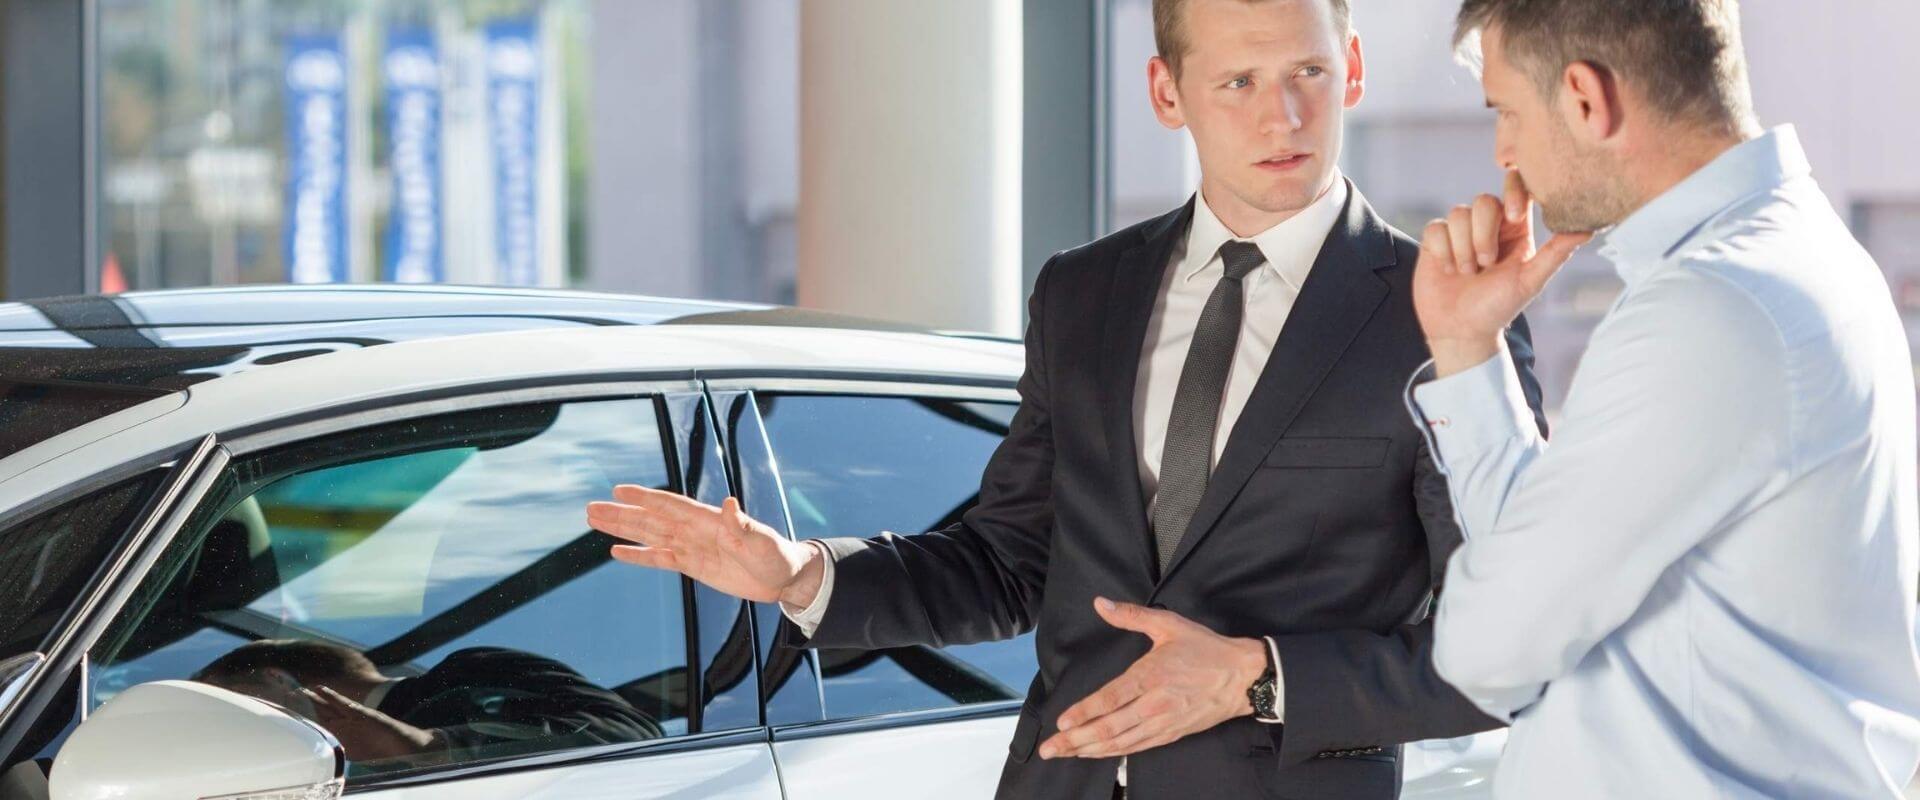 Nhân viên tư vấn xe ô tô là gì?